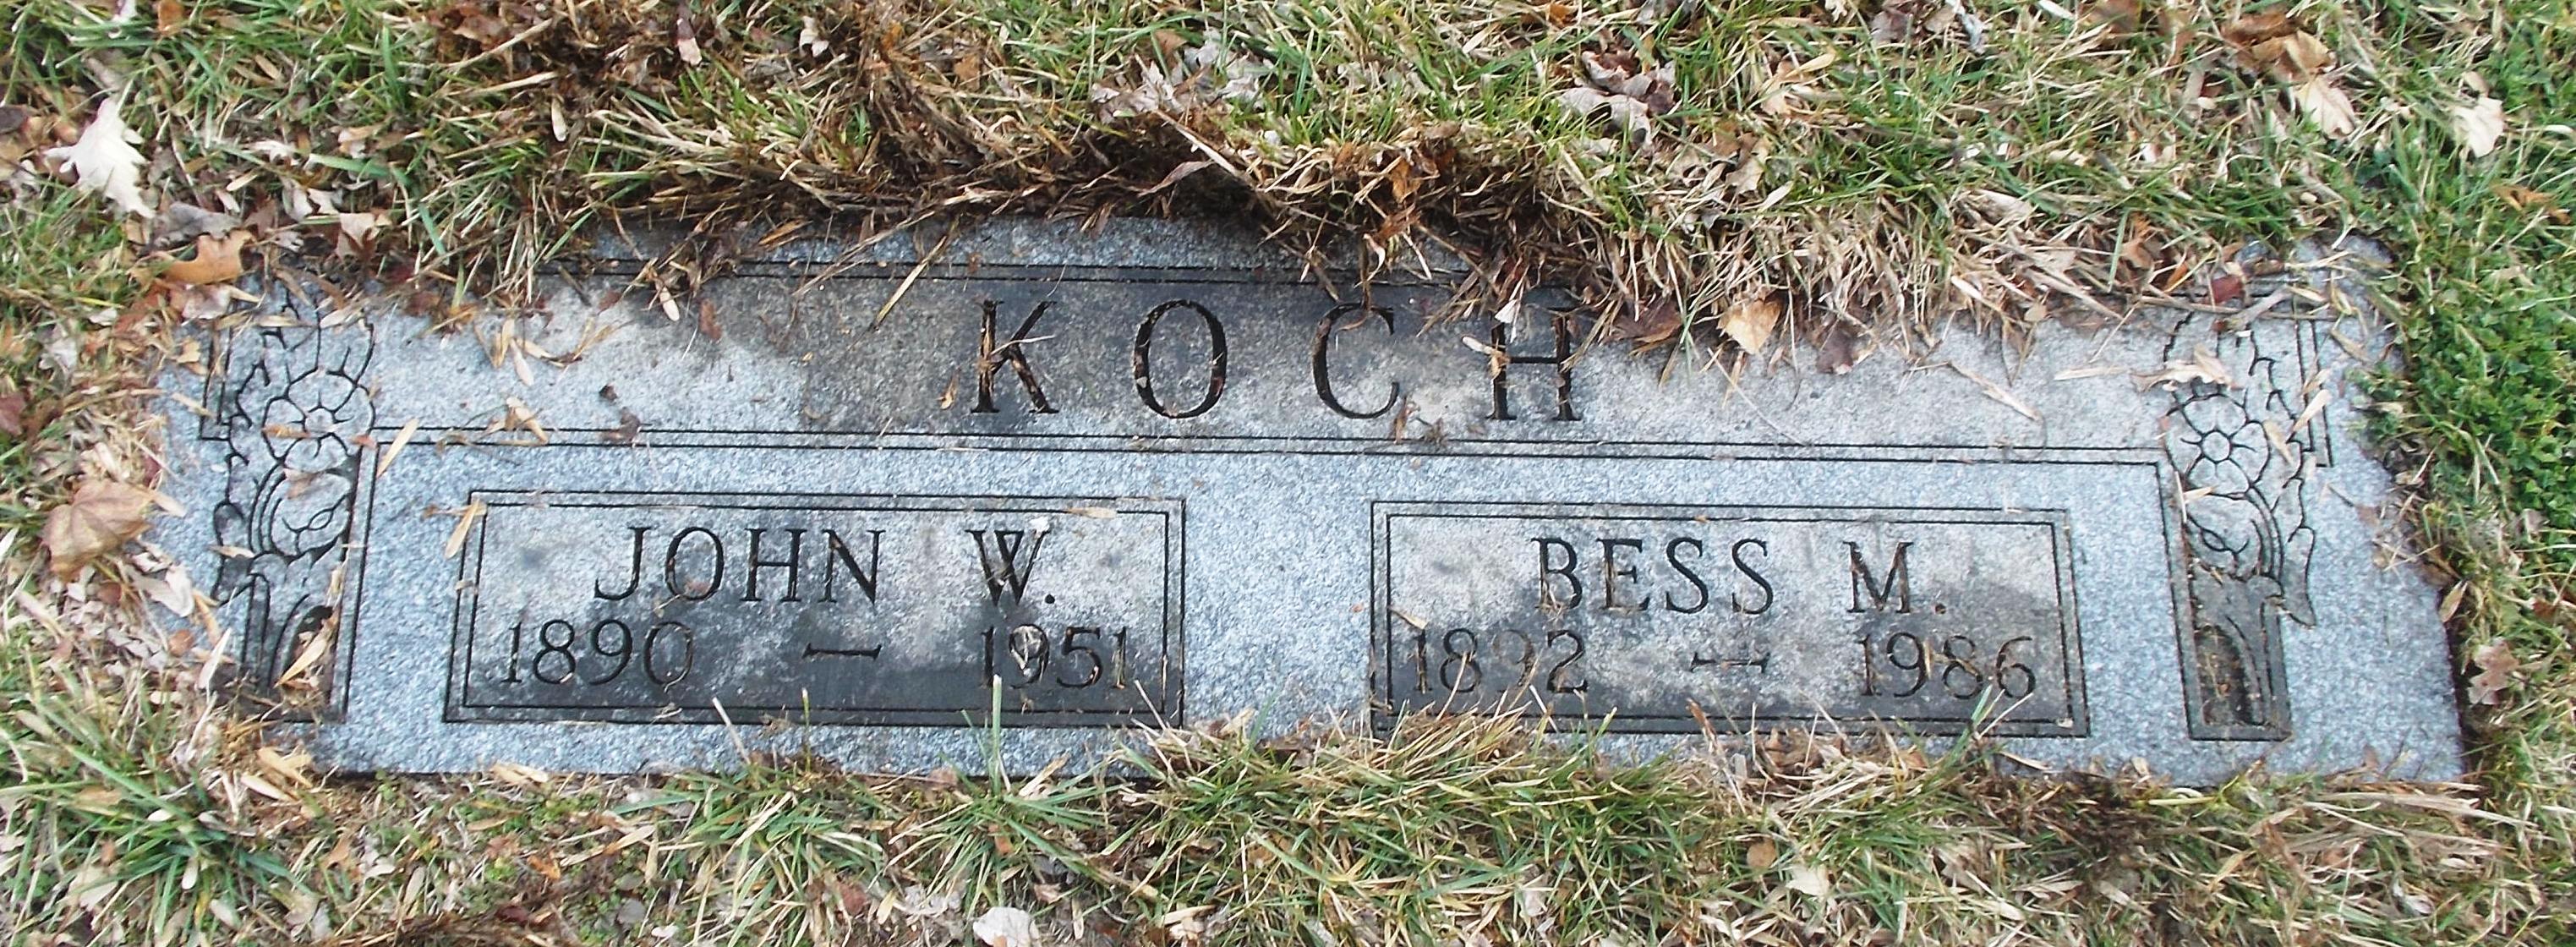 John W Koch